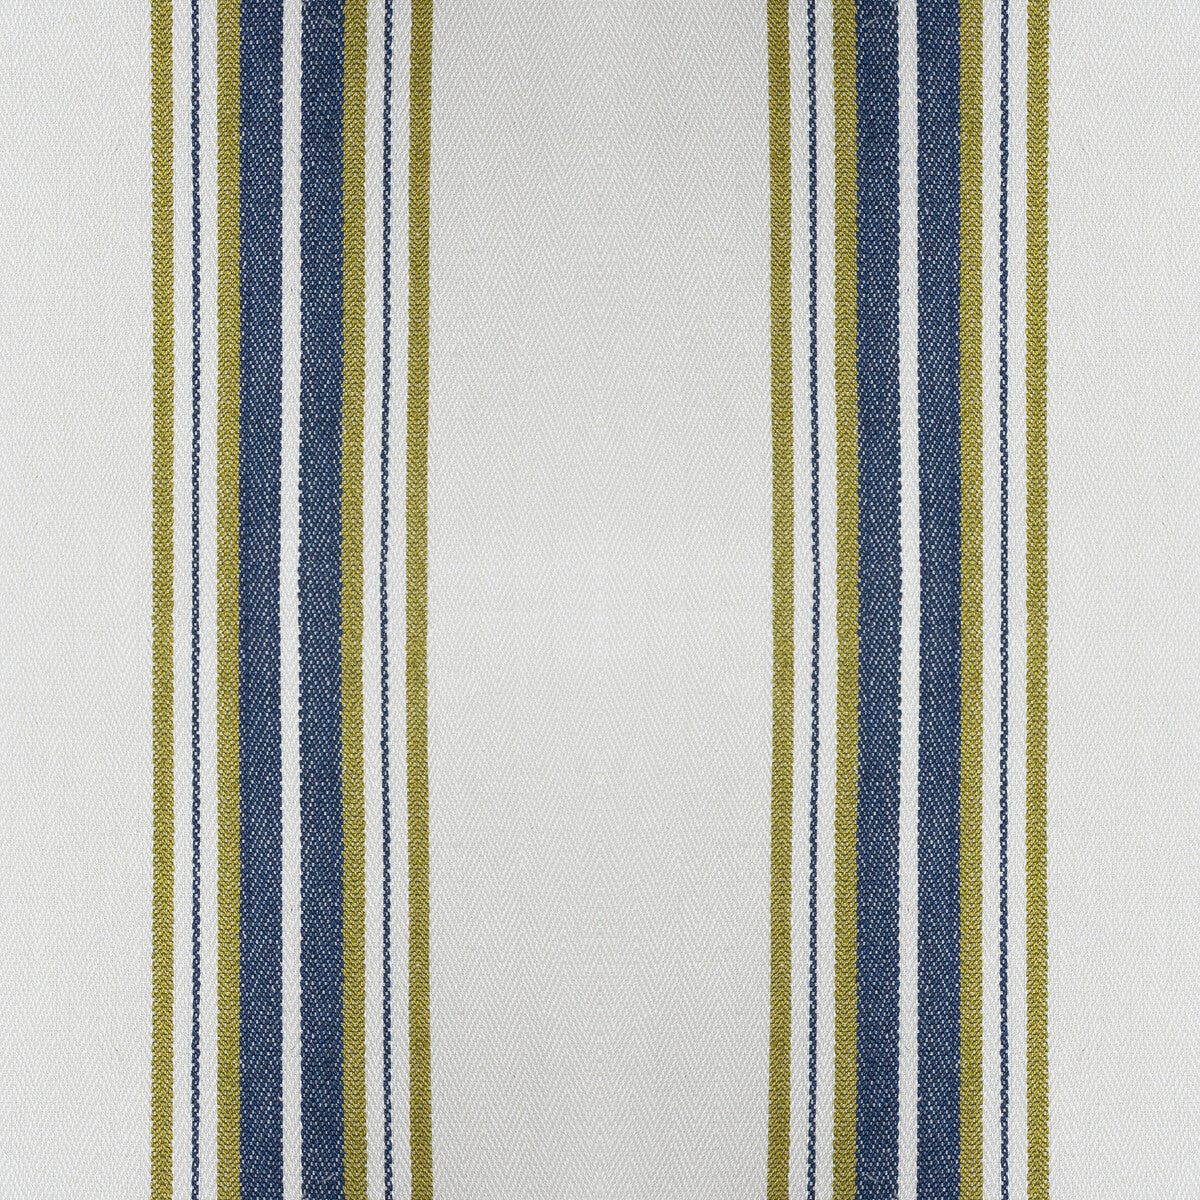 Nueva York fabric in verde/navy color - pattern GDT5573.007.0 - by Gaston y Daniela in the Gaston Luis Bustamante collection